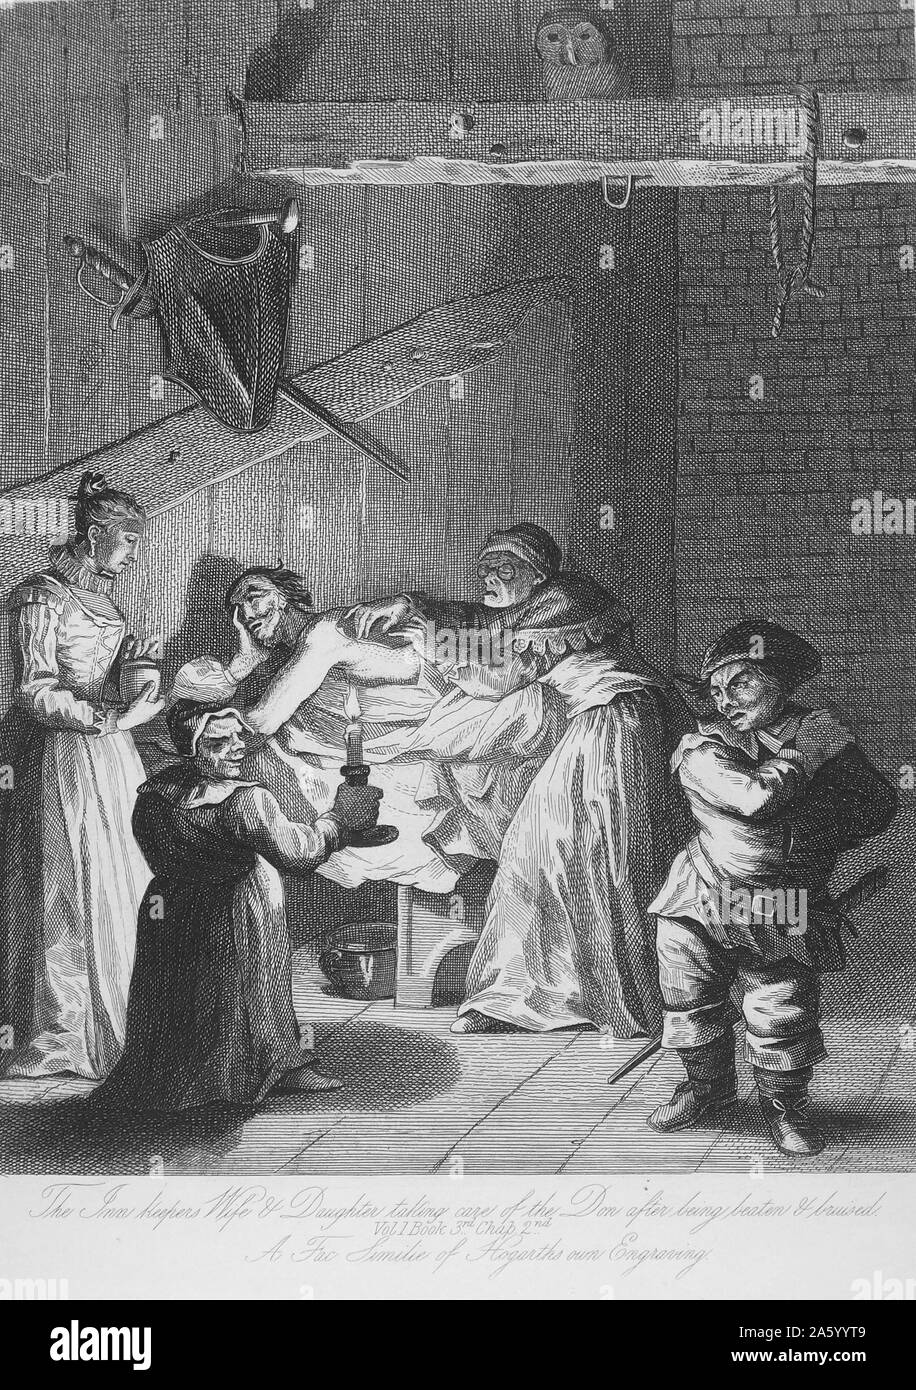 Incisione di William Hogarth (1697-1764) pittore inglese, printmaker, pittoriche satiro, critico sociale e fumettista editoriale che è stato accreditato con pionieristico di western arte sequenziale. Datata xviii secolo. Foto Stock